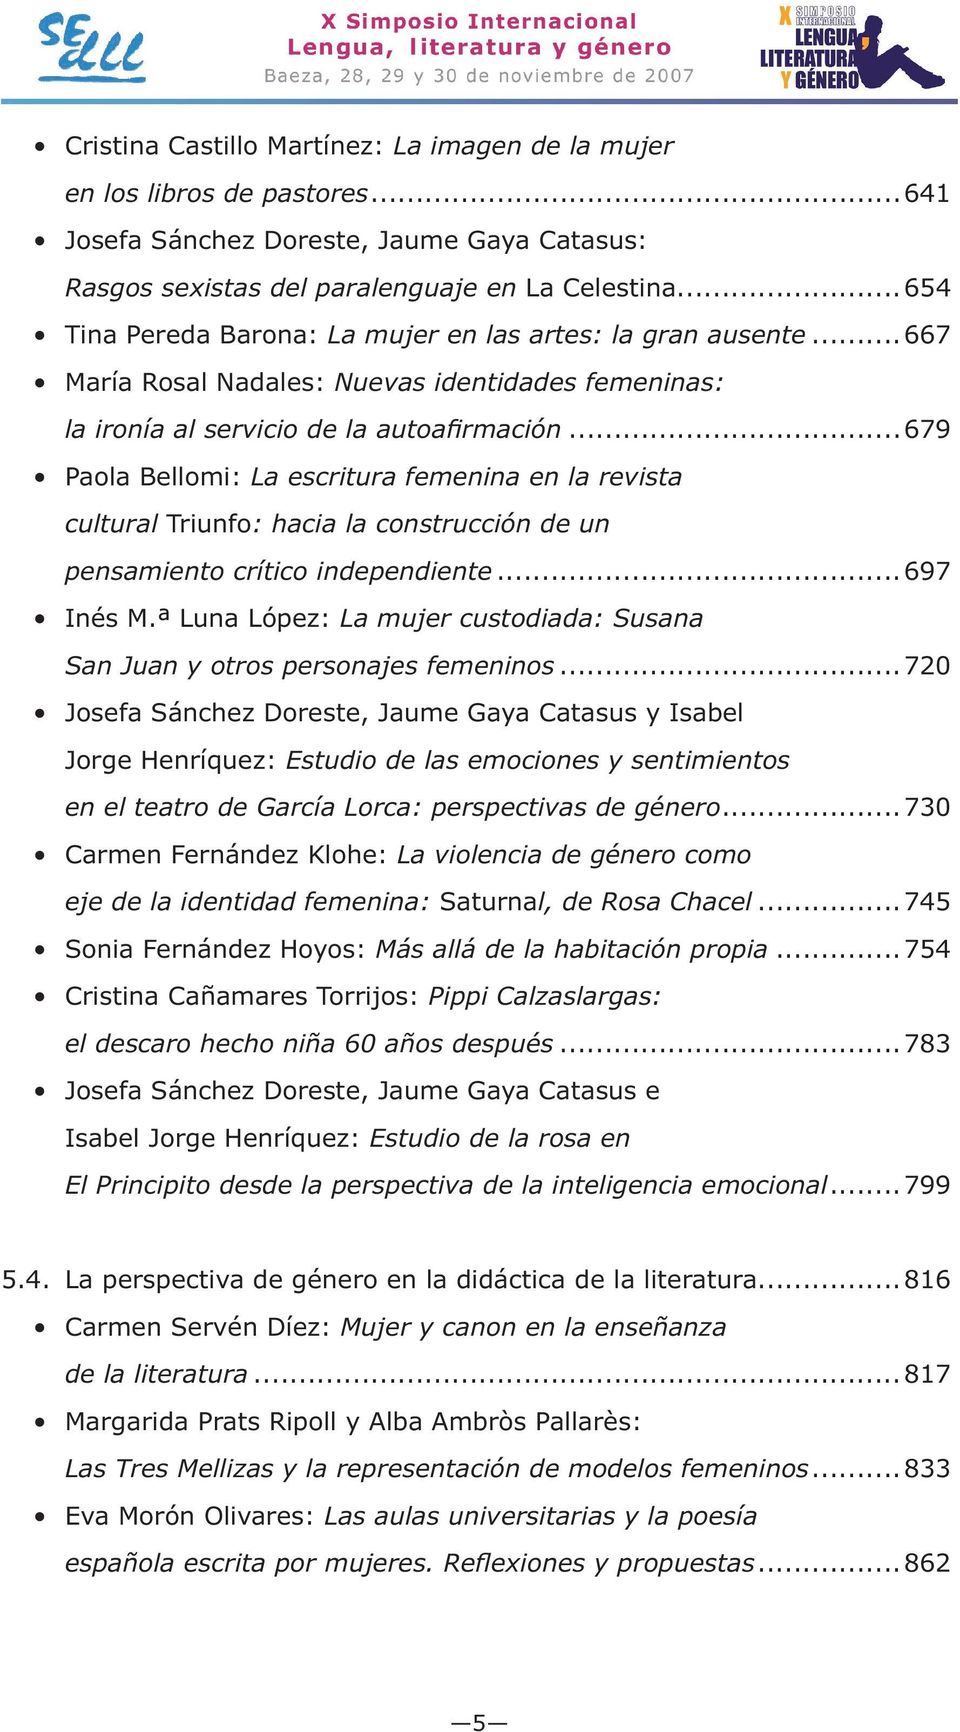 ..720 Estudio de las emociones y sentimientos en el teatro de García Lorca: perspectivas de género...730 La violencia de género como eje de la identidad femenina: l, de Rosa Chacel...745.